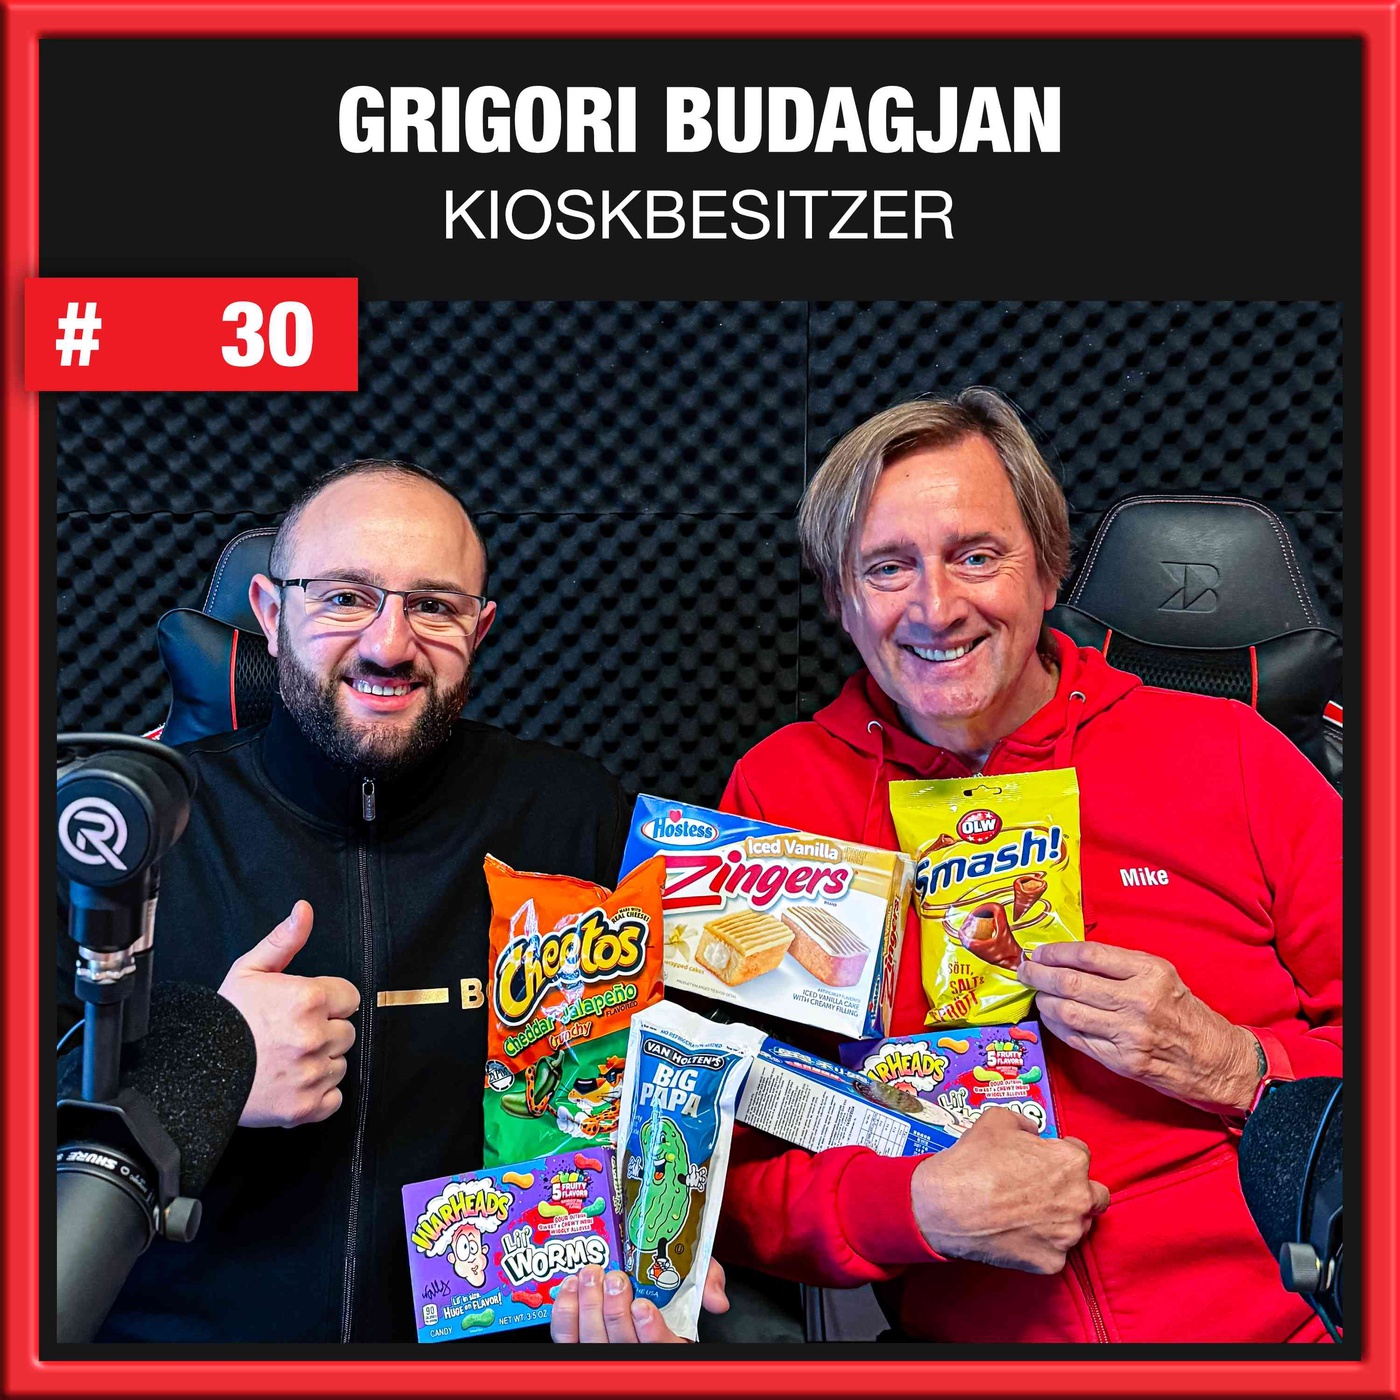 Gugo's Kiosk Besitzer Grigori Budagjan (#30)